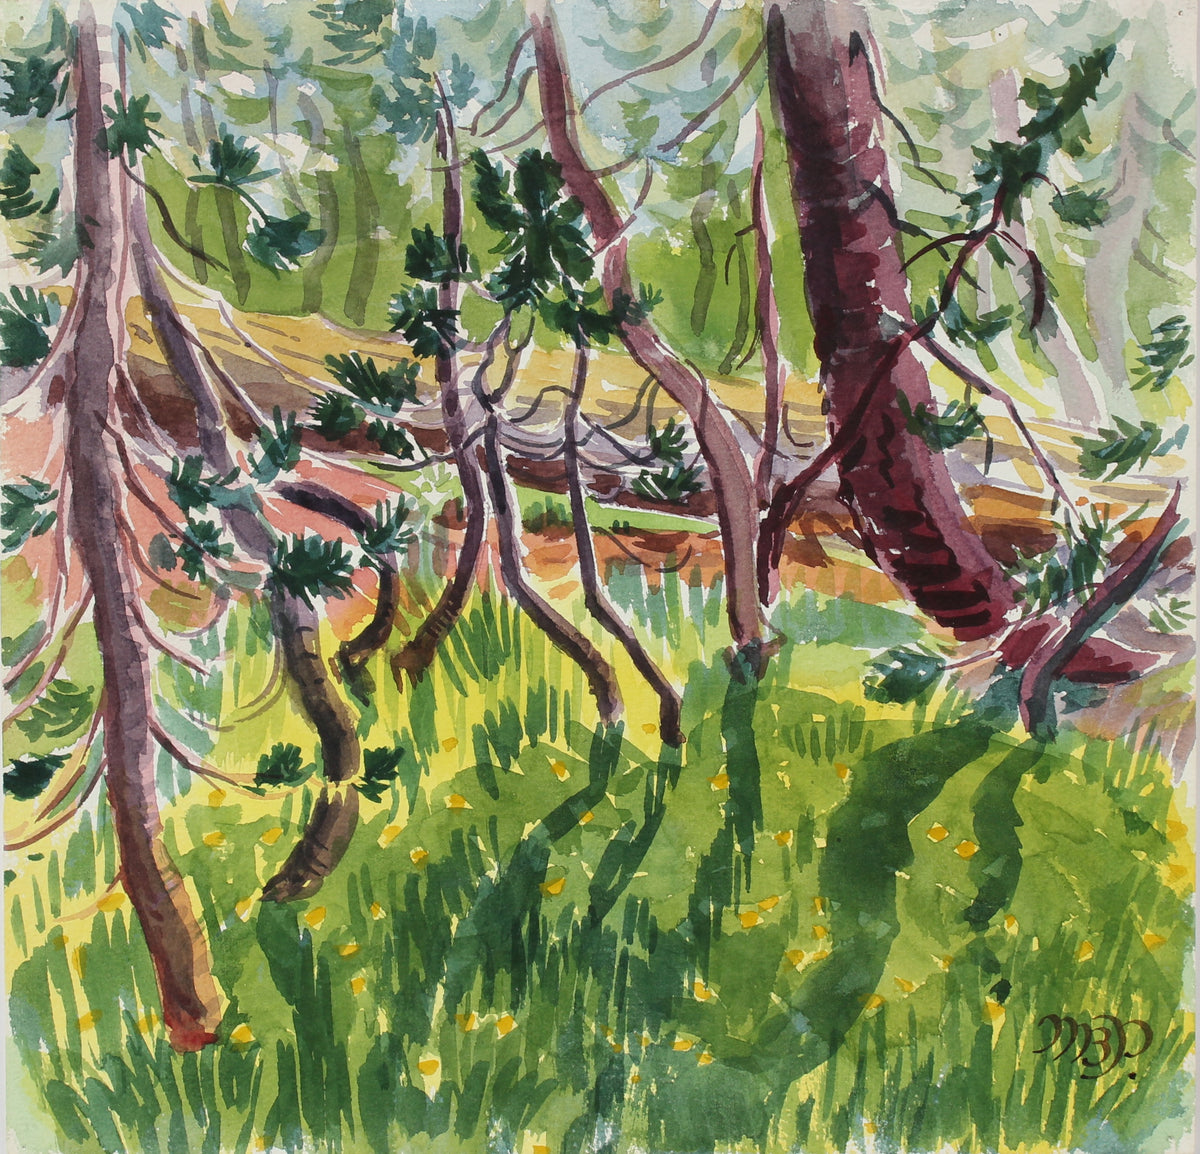 &lt;i&gt;Kindergarten Pines Playing in Sunlight&lt;/i&gt; &lt;br&gt; 1966 Watercolor&lt;br&gt;&lt;br&gt;#98645